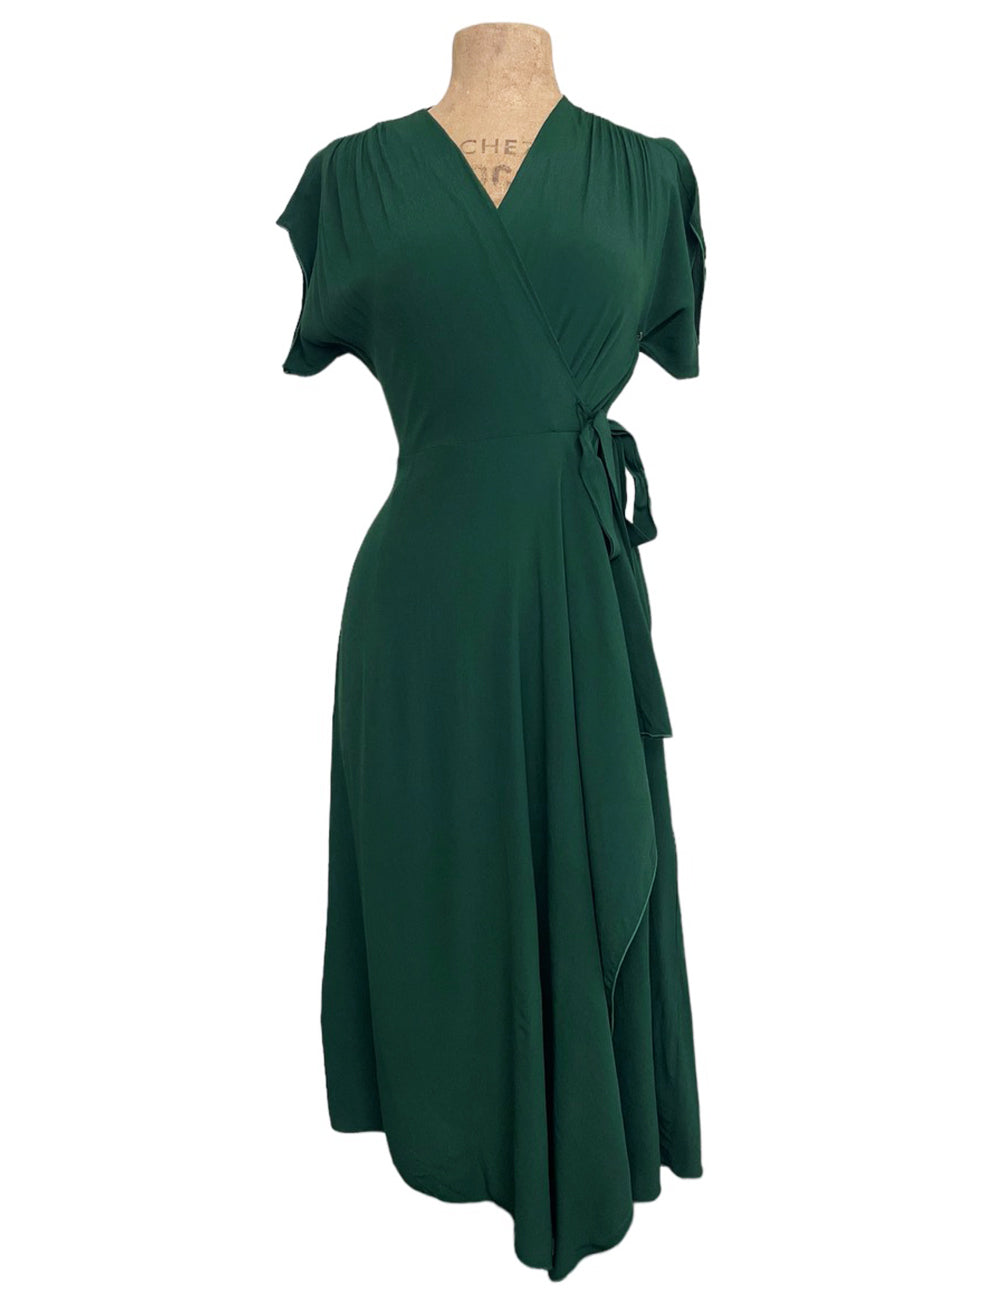 Evergreen 1940s Inspired Cascade Wrap Dress